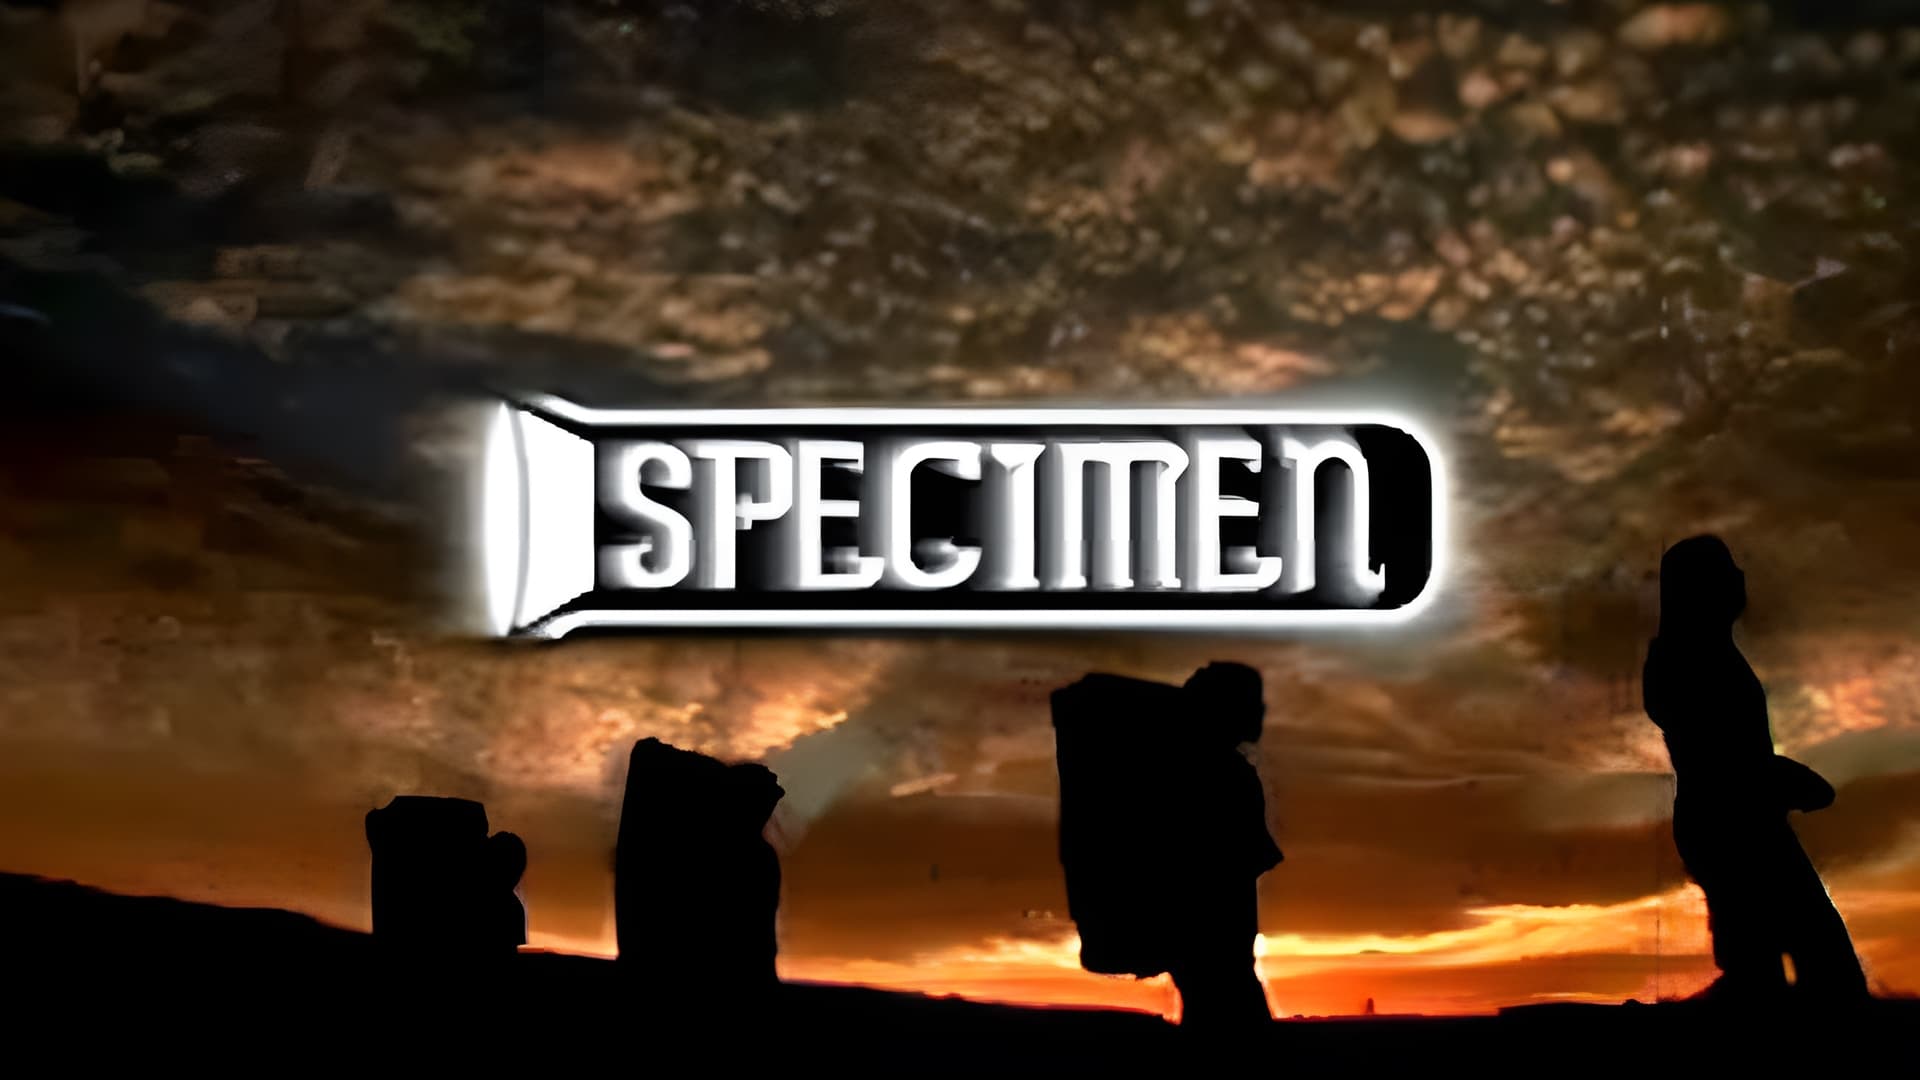 Specimen (2006)